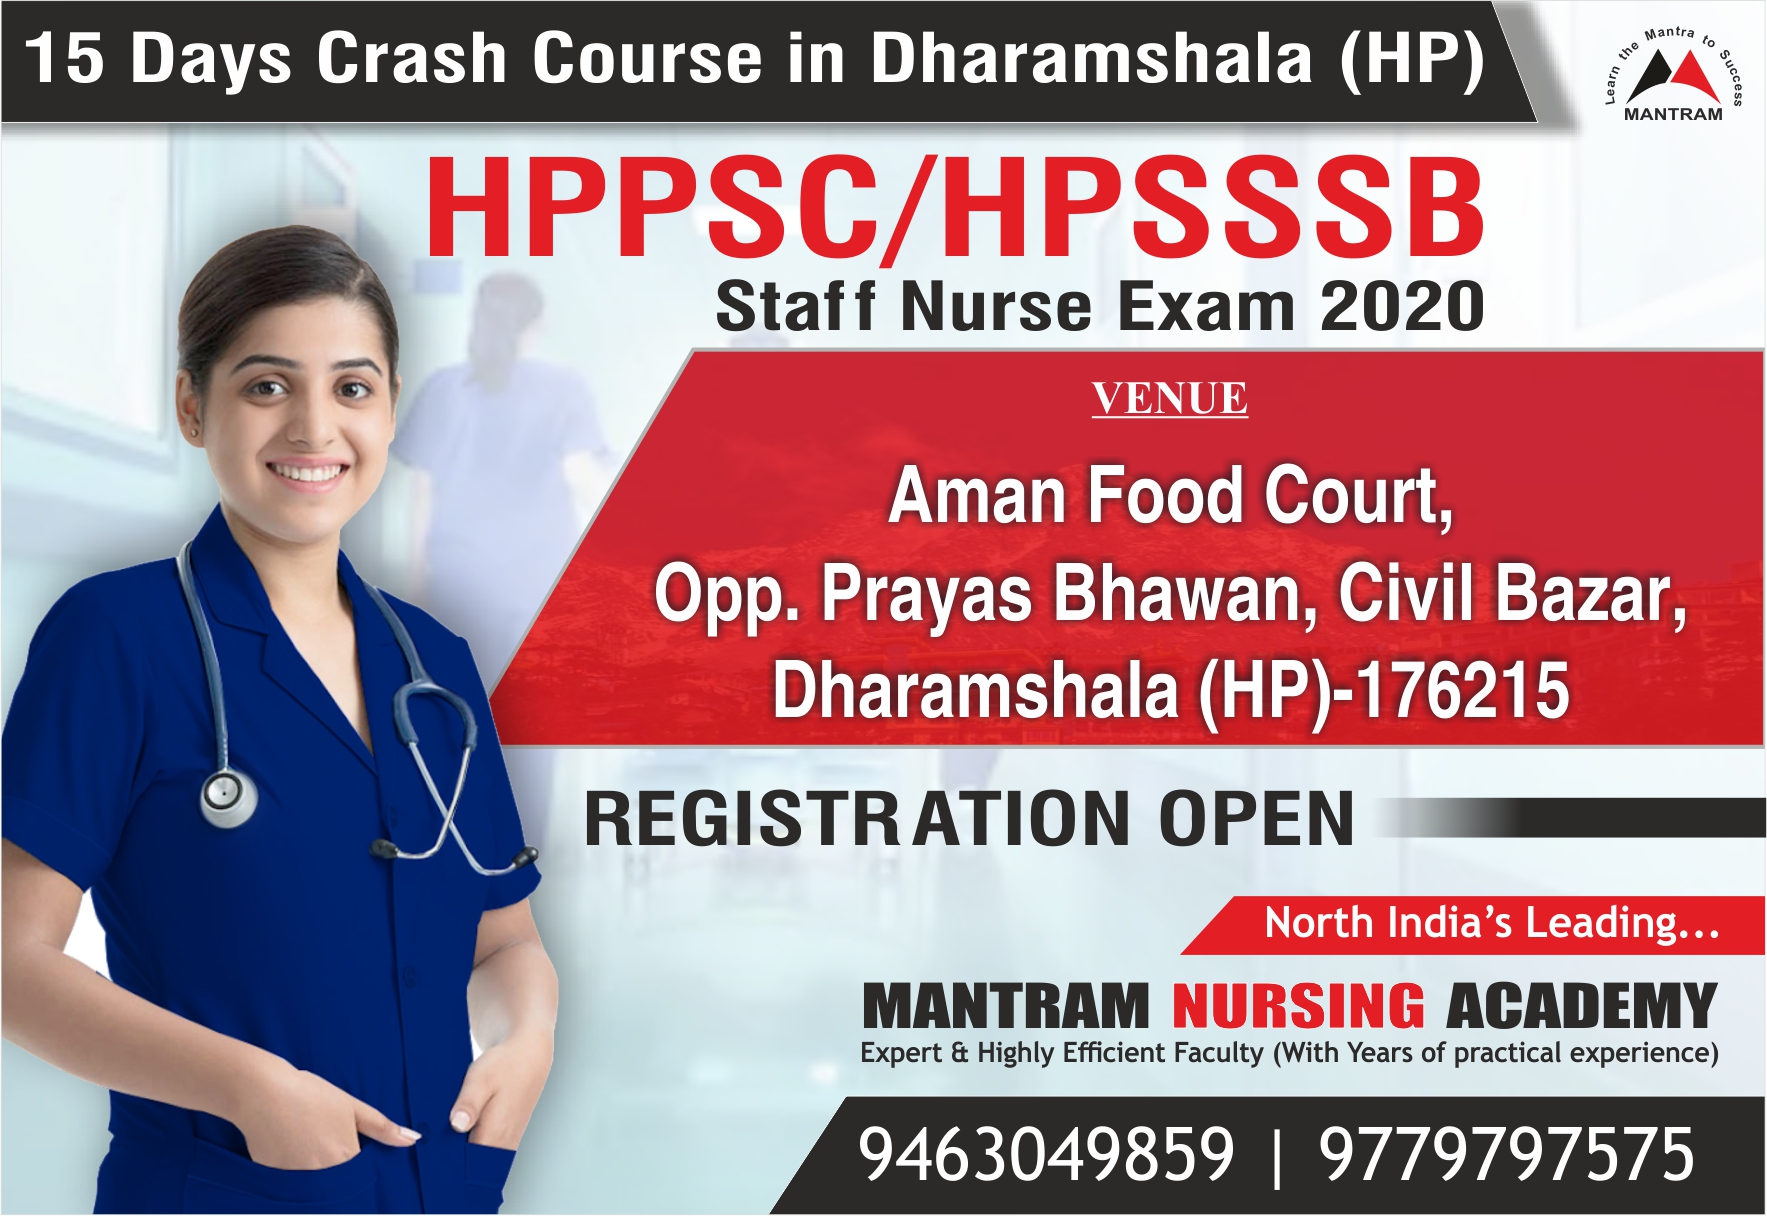 HPPSC HPSSSB Crash Course Dharamshala